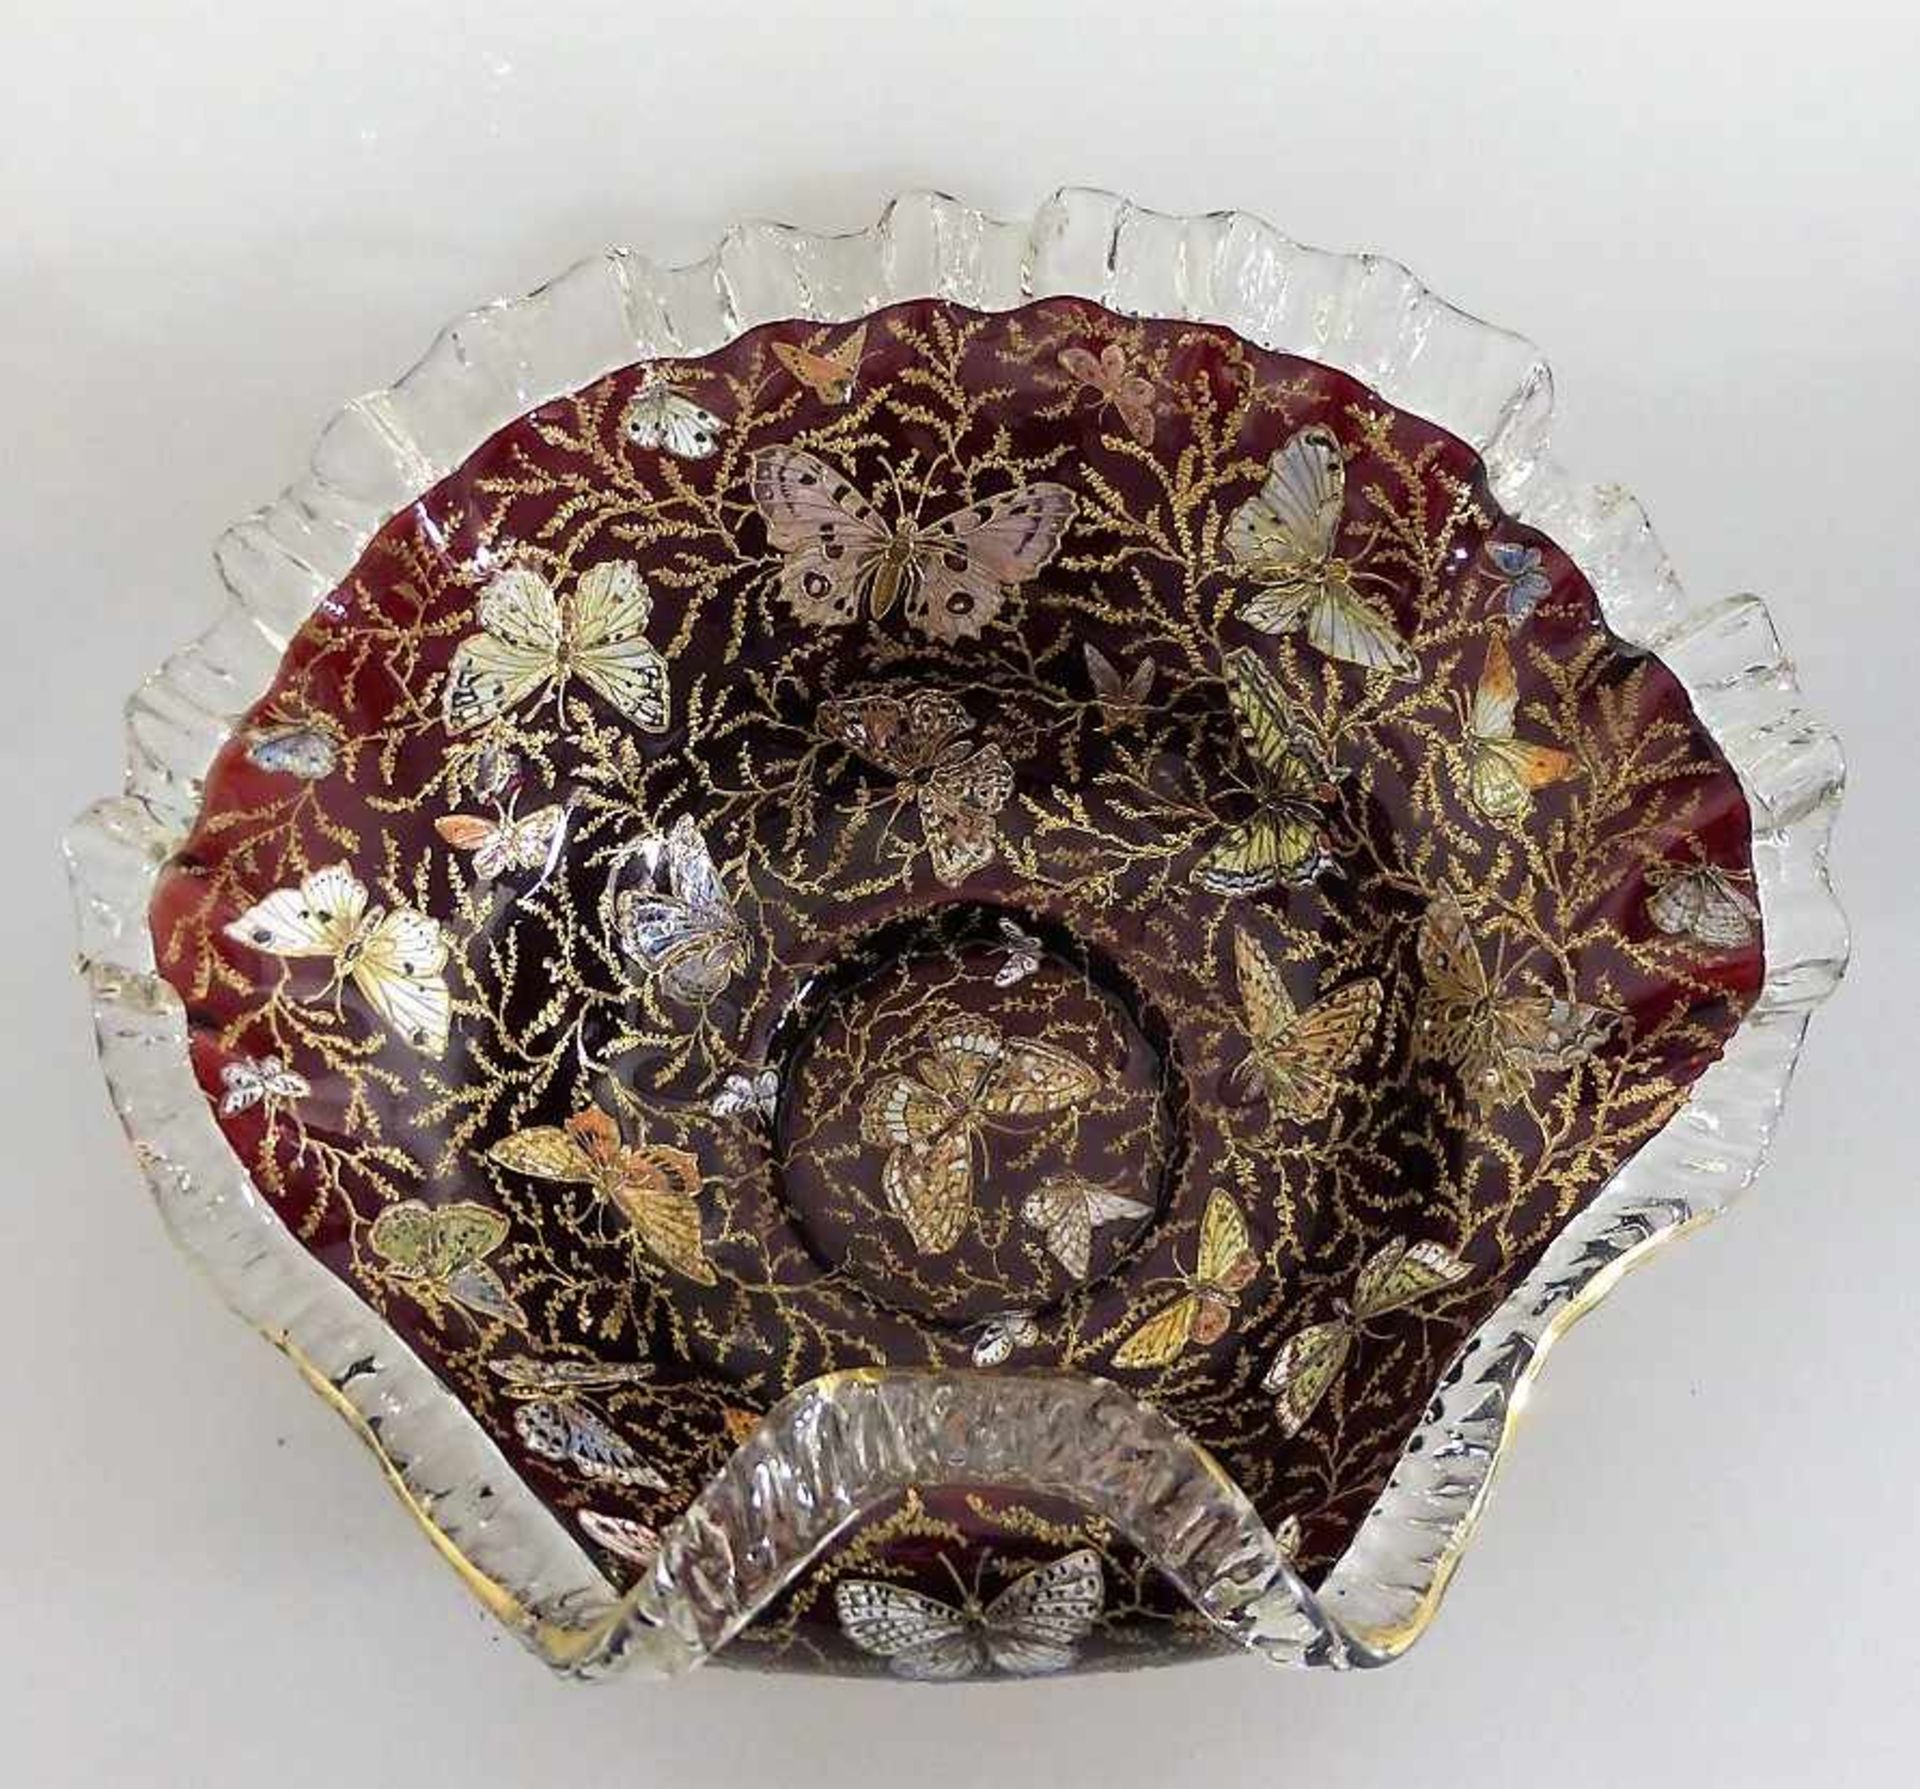 Jugendstil Glasschale, Böhmen um 1900, Dekor mit Schmetterlingen zwischen Blattranken in<